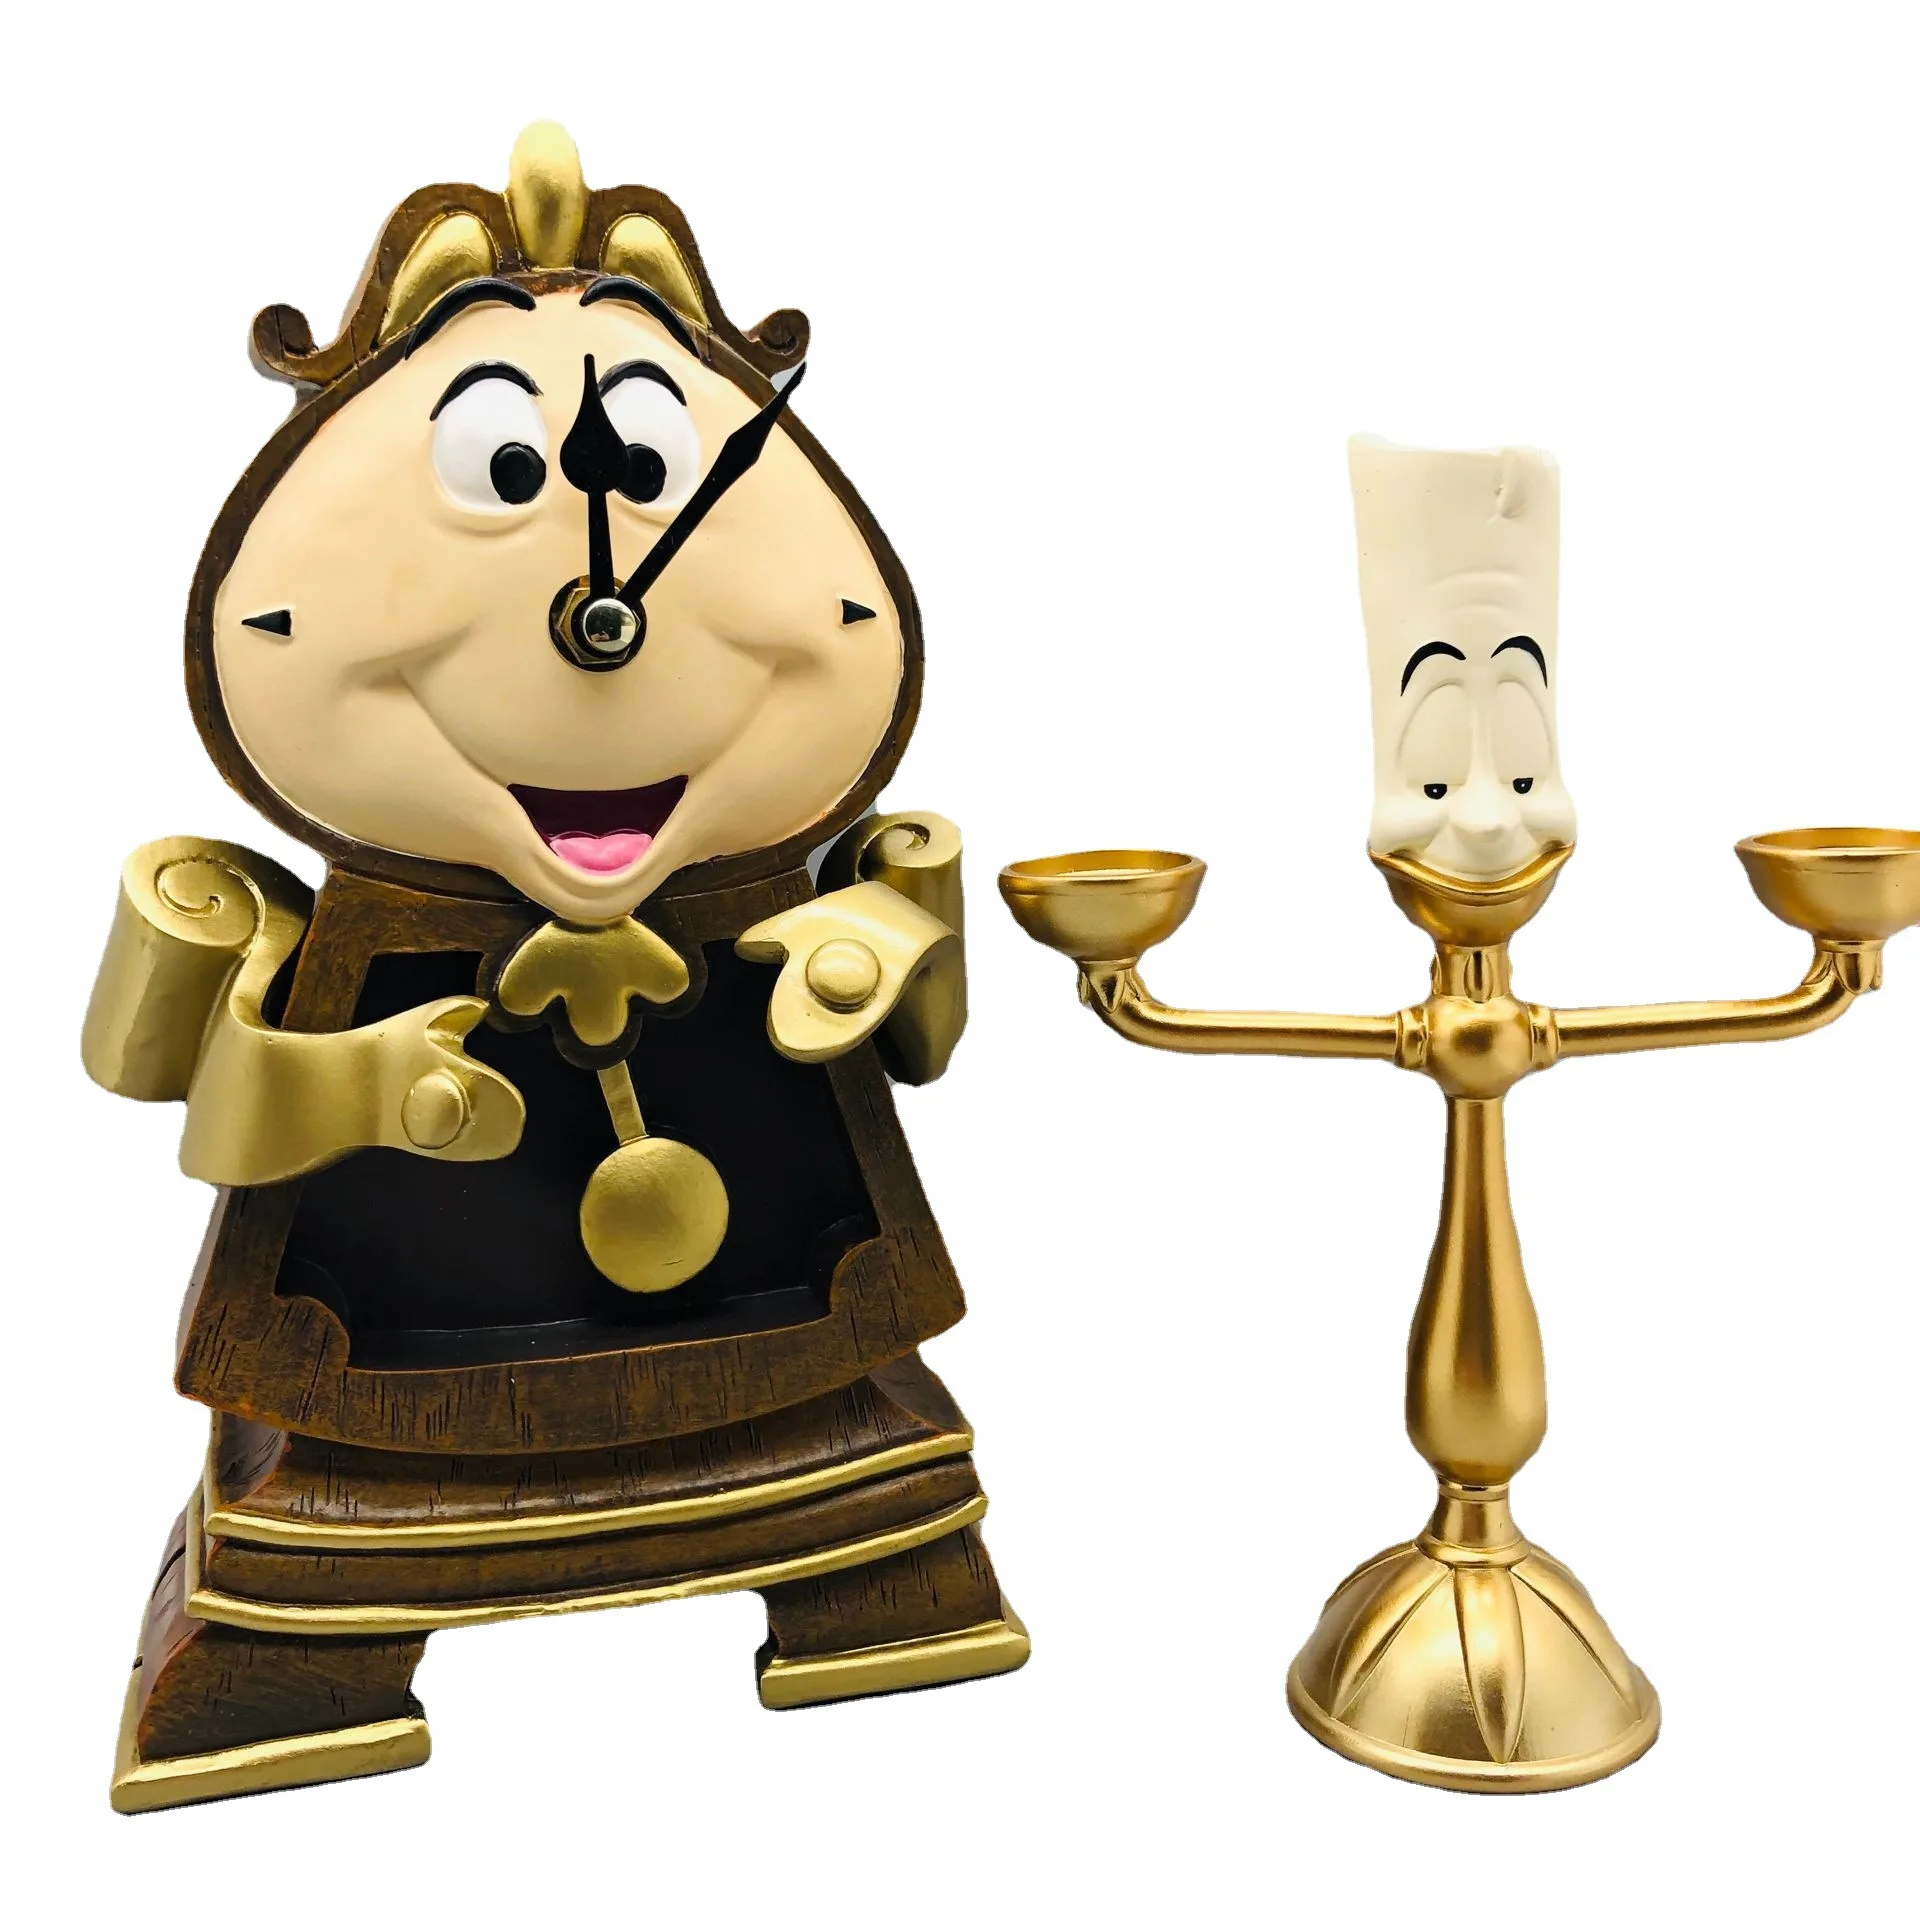 Disney-figuras de acción de La Bella y La Bestia para niños, figuritas de colección decorativas de 24cm, modelo de PVC, Cogsworth Mr Clock